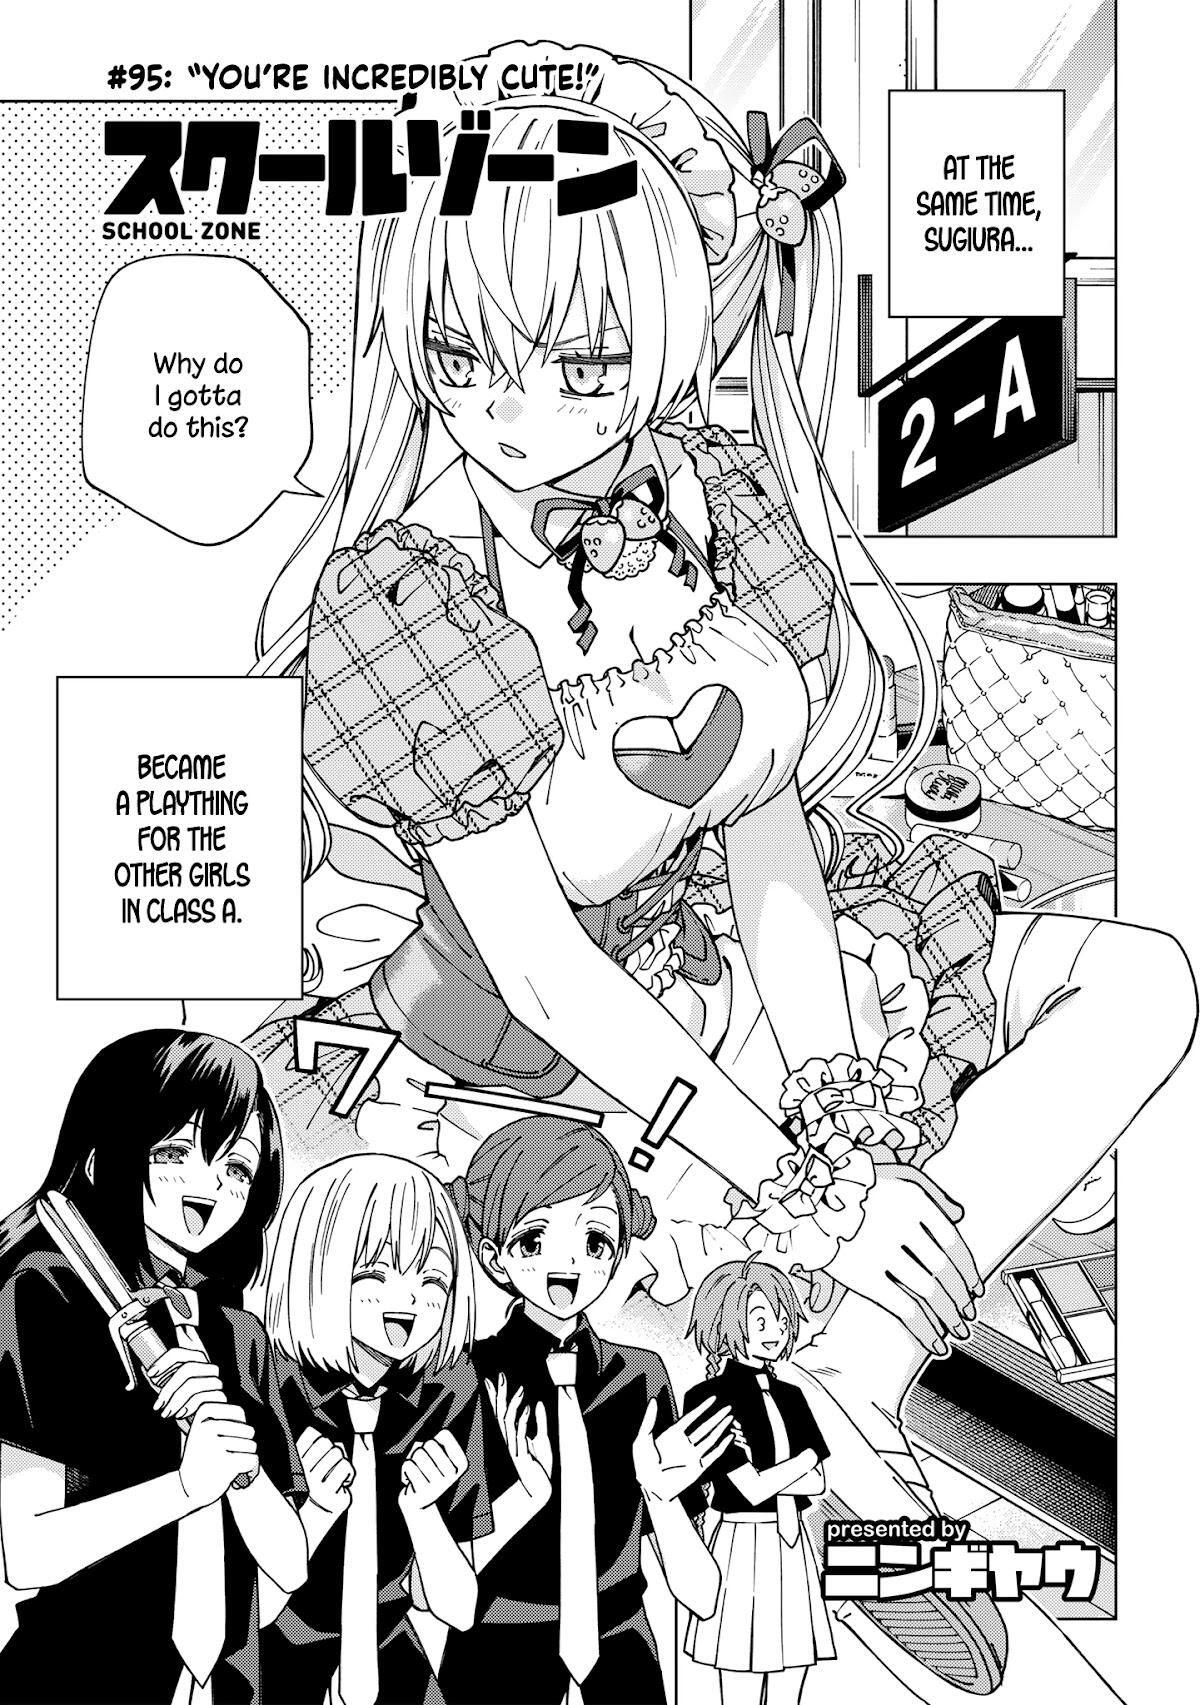 School Zone Girls Manga